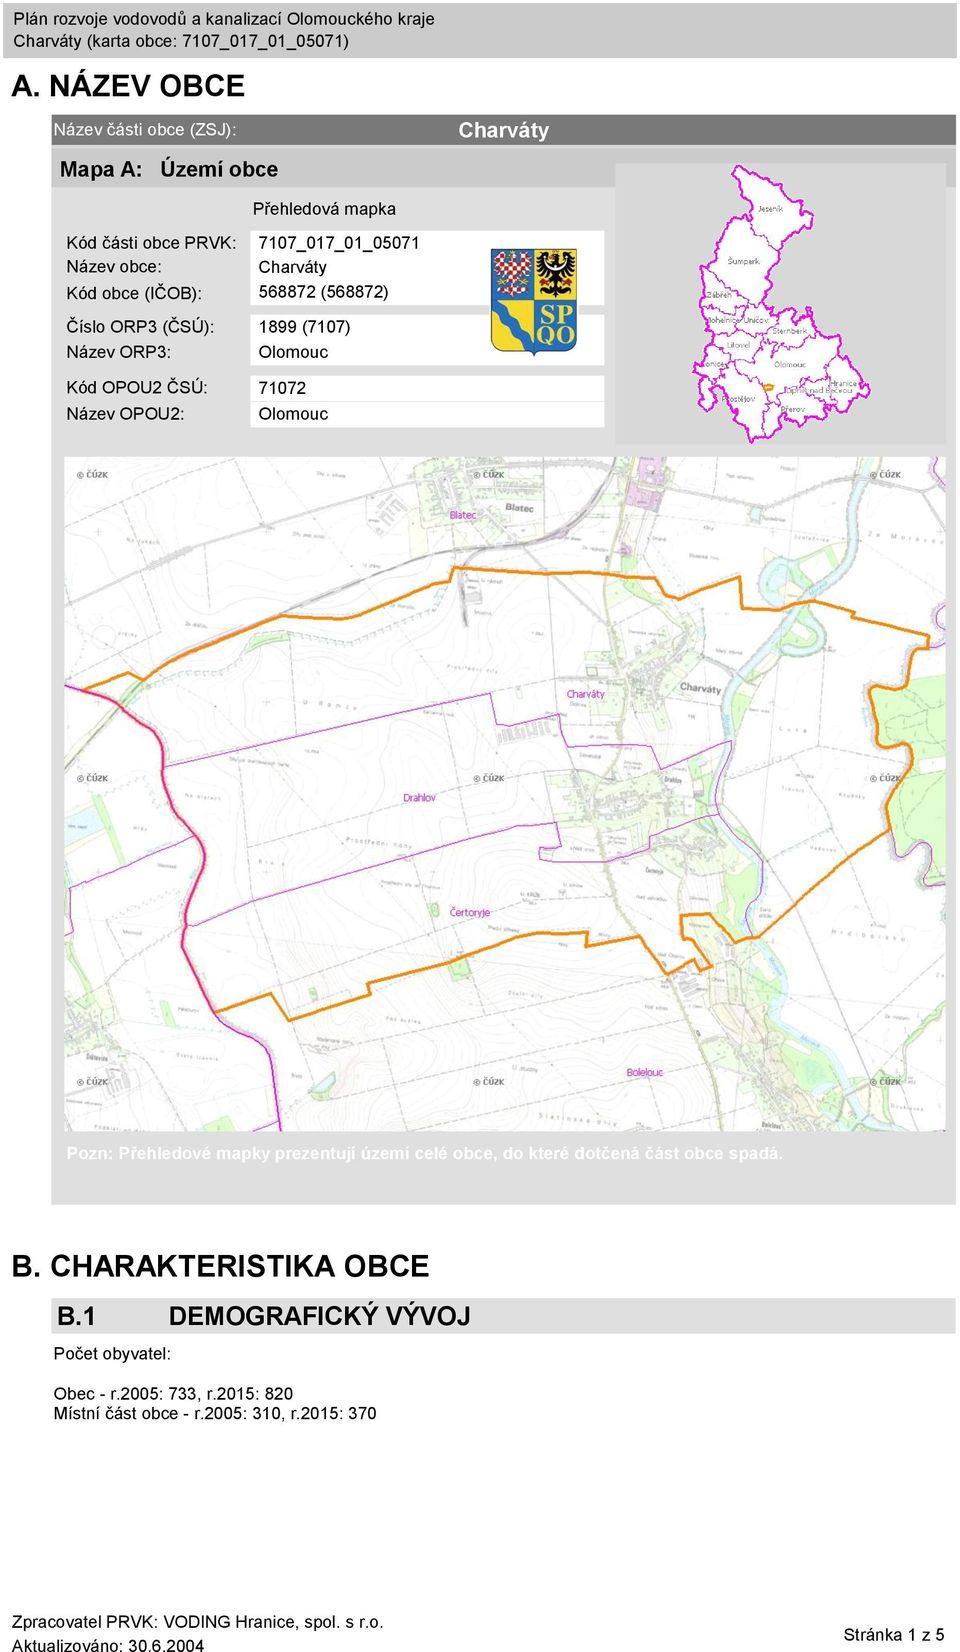 Název OPOU2: Olomouc Pozn: Přehledové mapky prezentují území celé obce, do které dotčená část obce spadá. B.